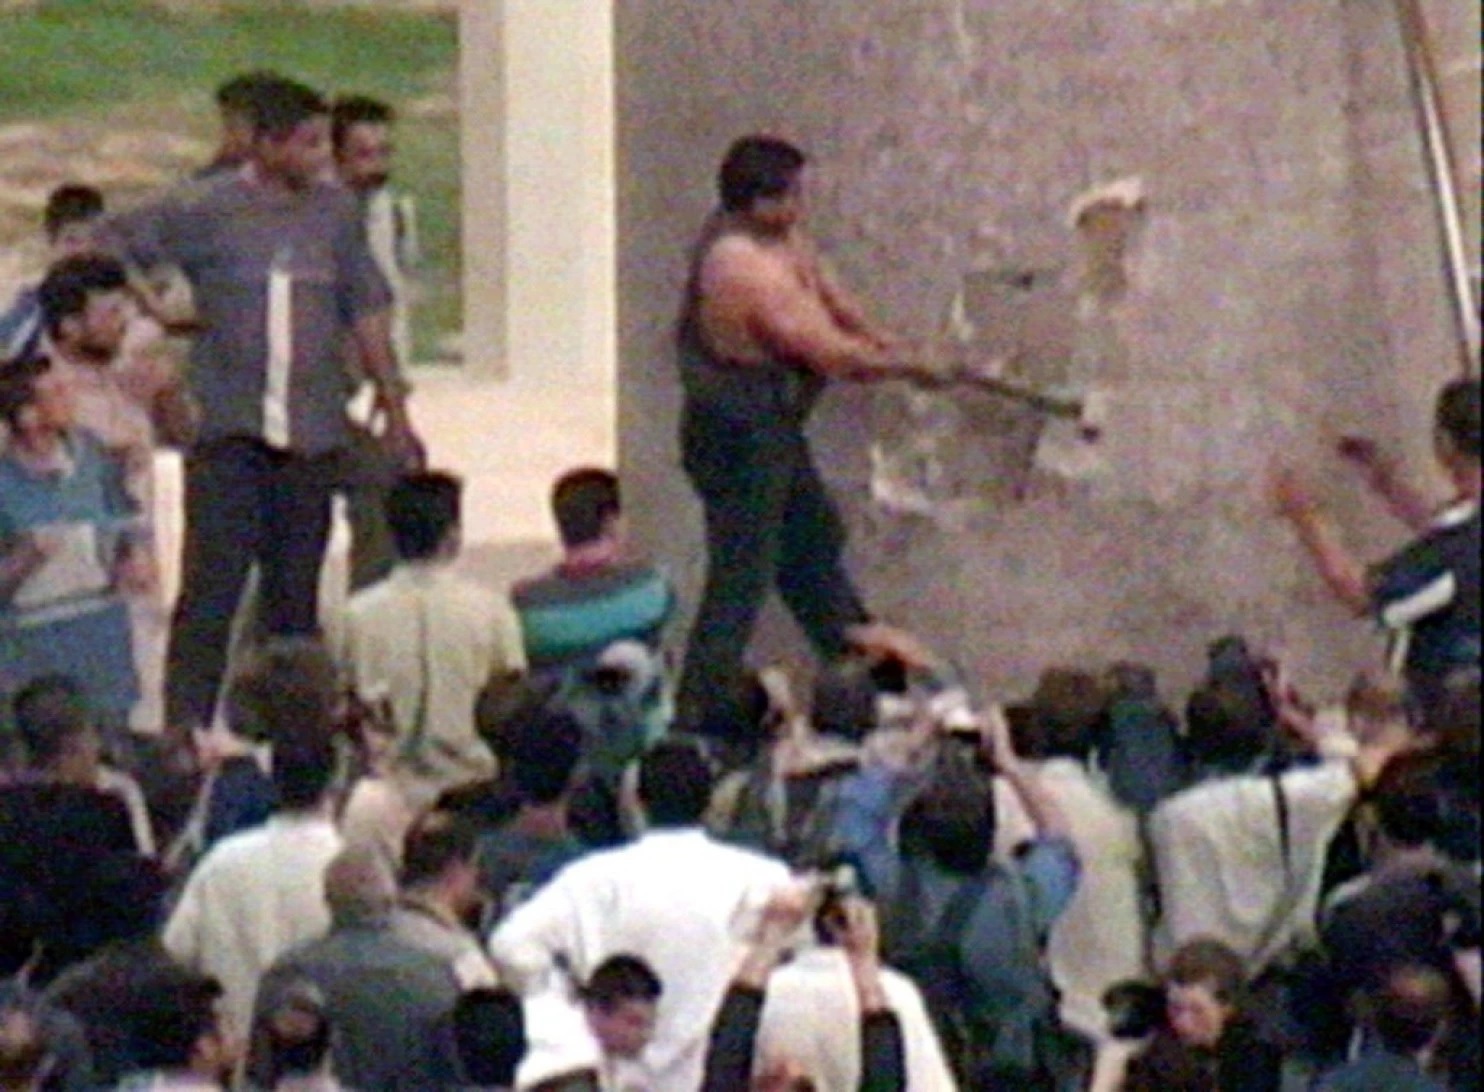 當年 Kadhim al-Jabbouri 舉起大錘，對薩達姆銅像又打又錘，現在他卻寧願獨裁再來。圖片來源：路透社電視台